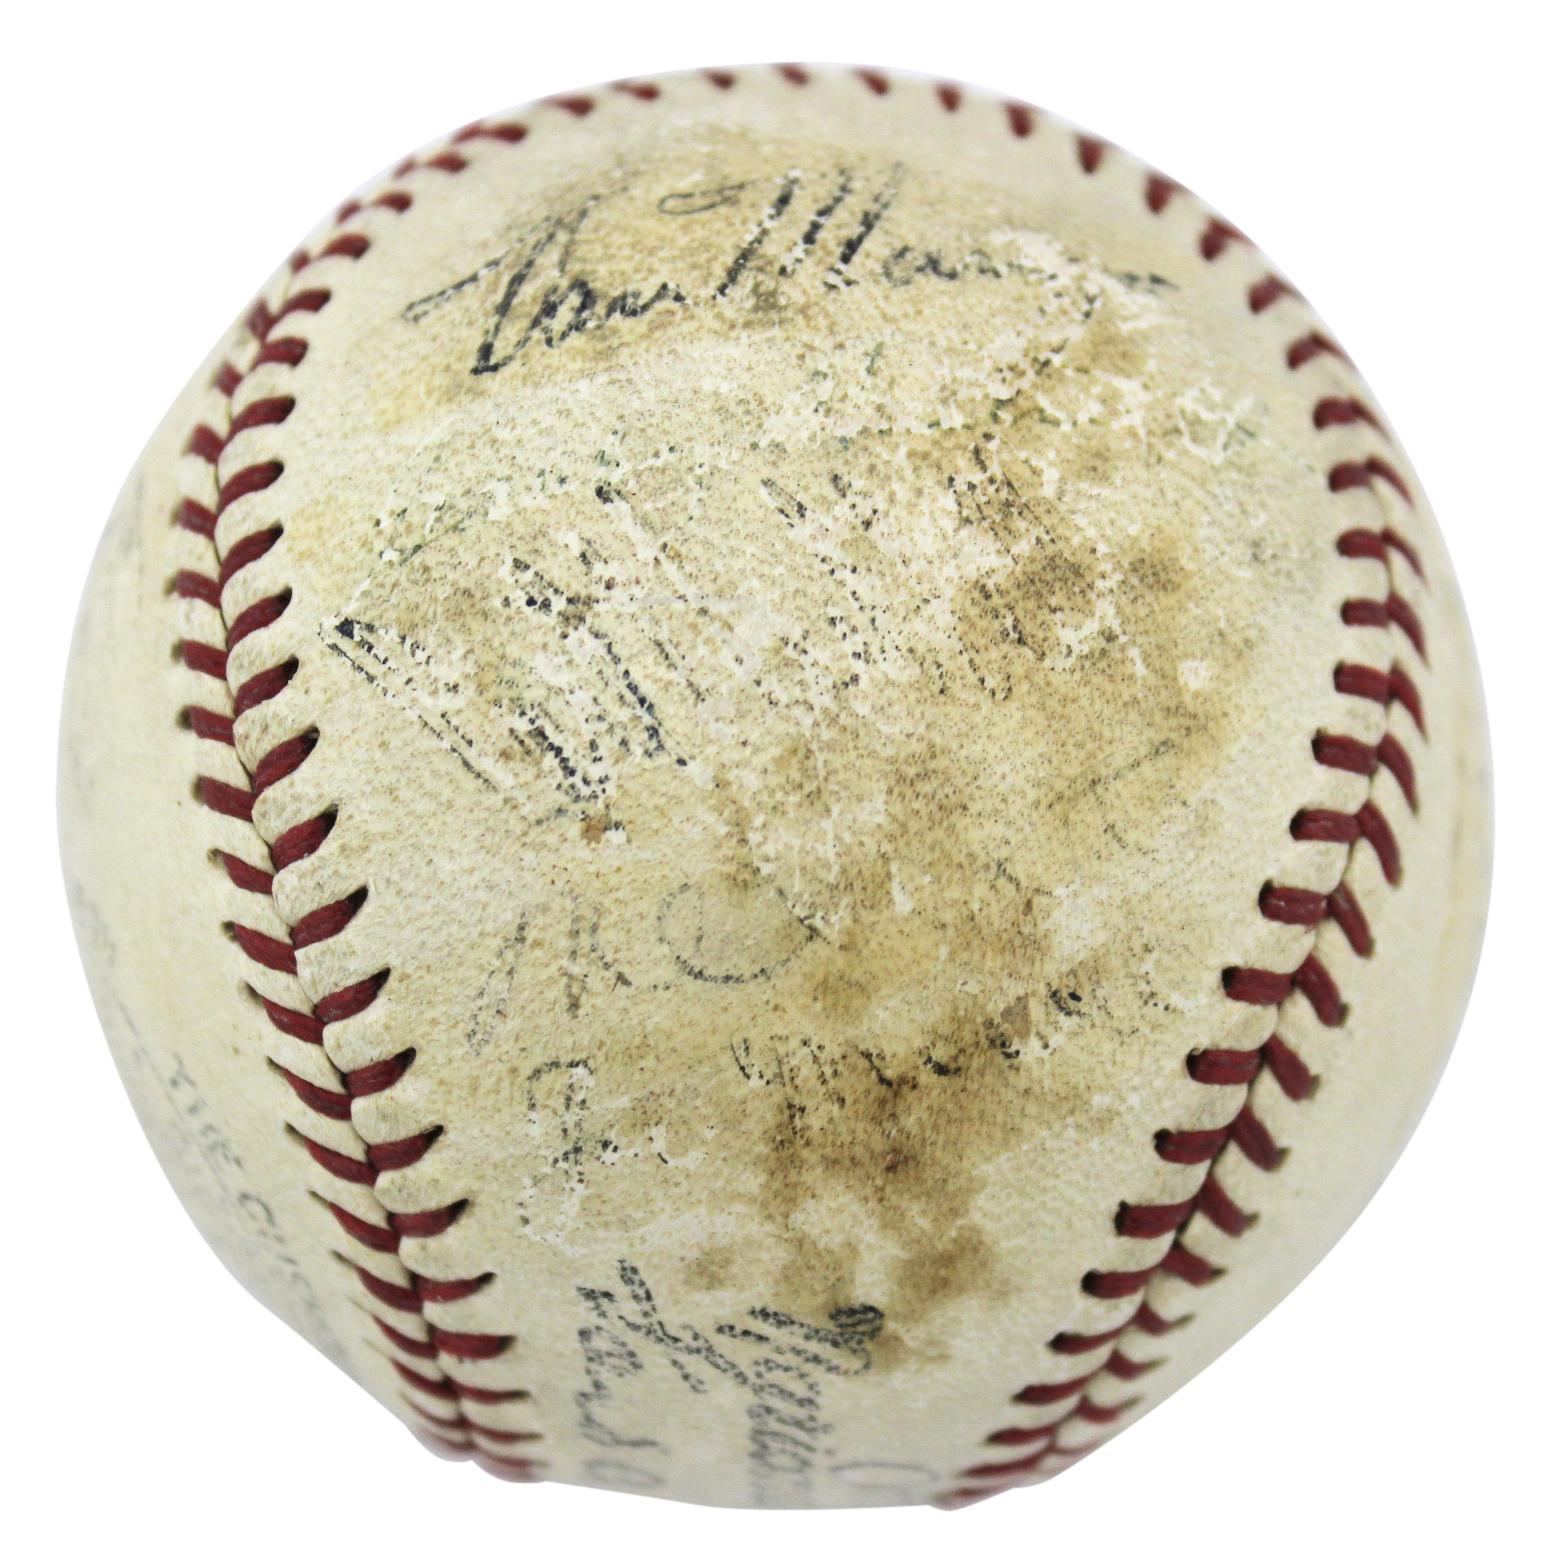 Press Pass Collectibles 1935 Nl All Stars (22) Signed Onl Baseball Ott Medwick Hubbell Waner PSA #S02327